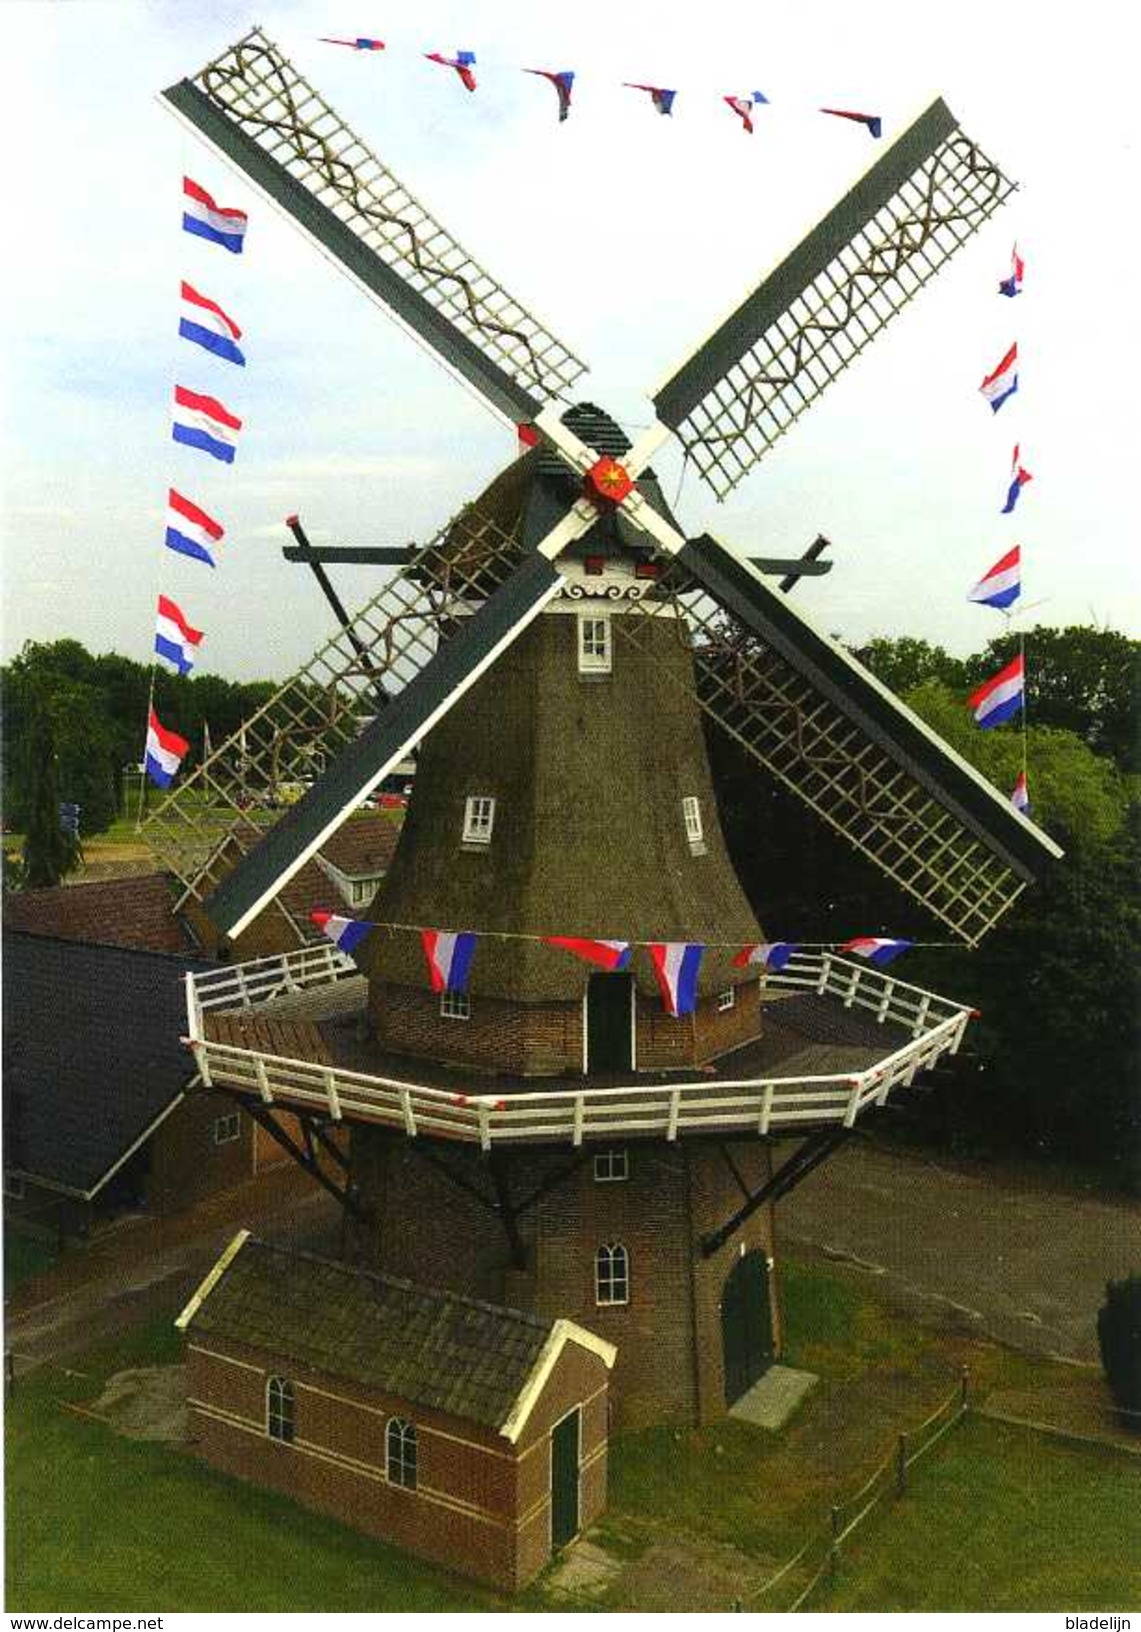 COEVORDEN (Drenthe) - Molen/moulin - Fraaie Close-up Van "De Arend" In Bruidstooi, Gefotografeerd Vanuit Een Drone. TOP! - Coevorden